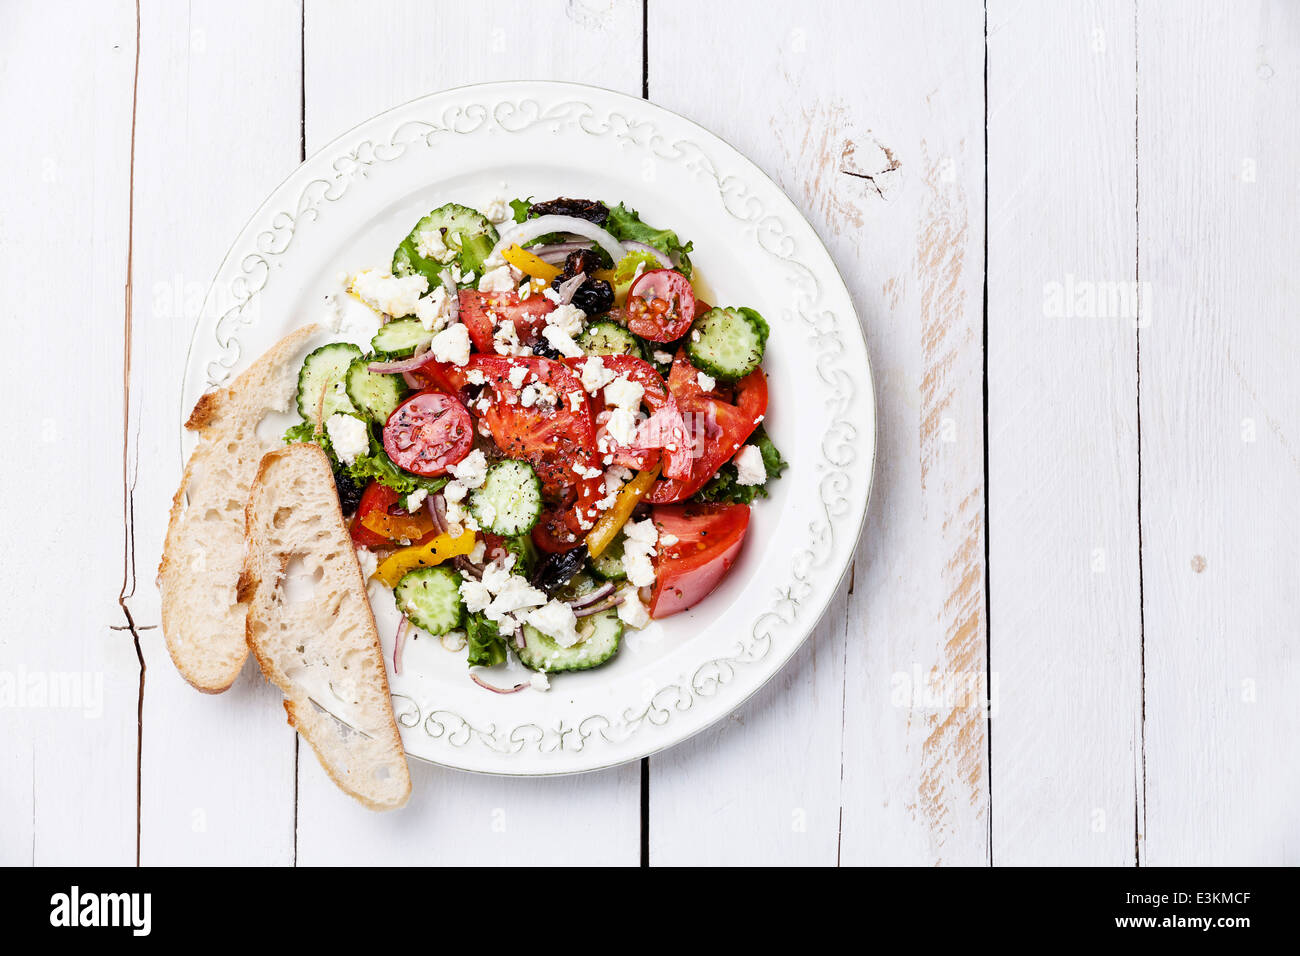 Salade grecque avec feta et olives séchées au soleil sur fond de bois blanc Banque D'Images